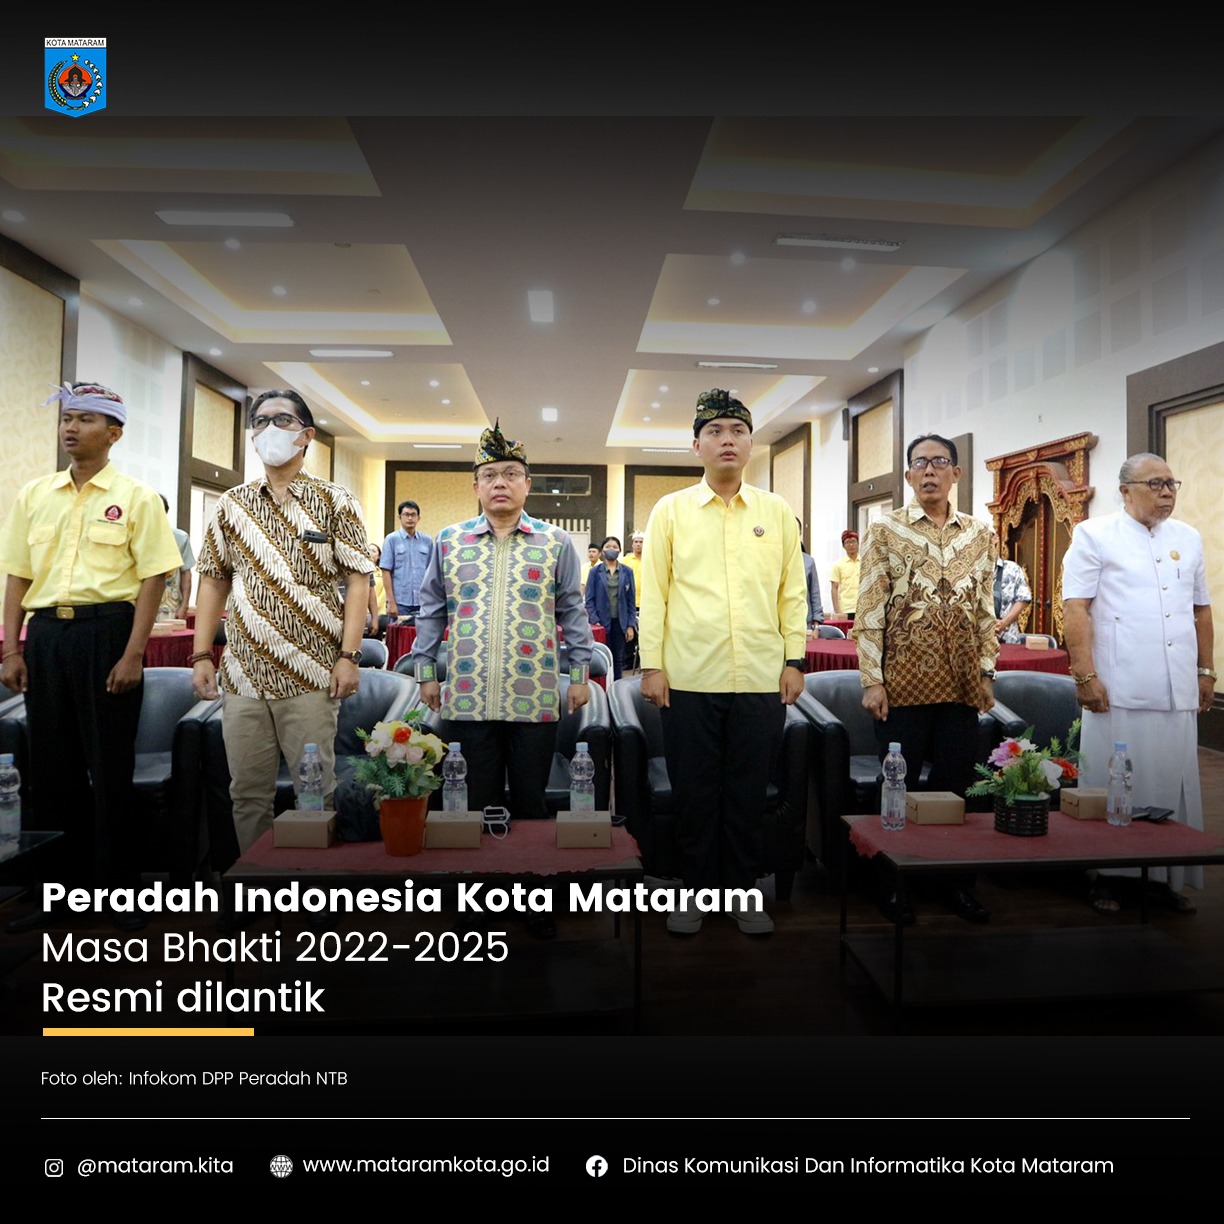 Peradah Indonesia Kota Mataram Masa Bhakti 2022 - 2025 Resmi dilantik